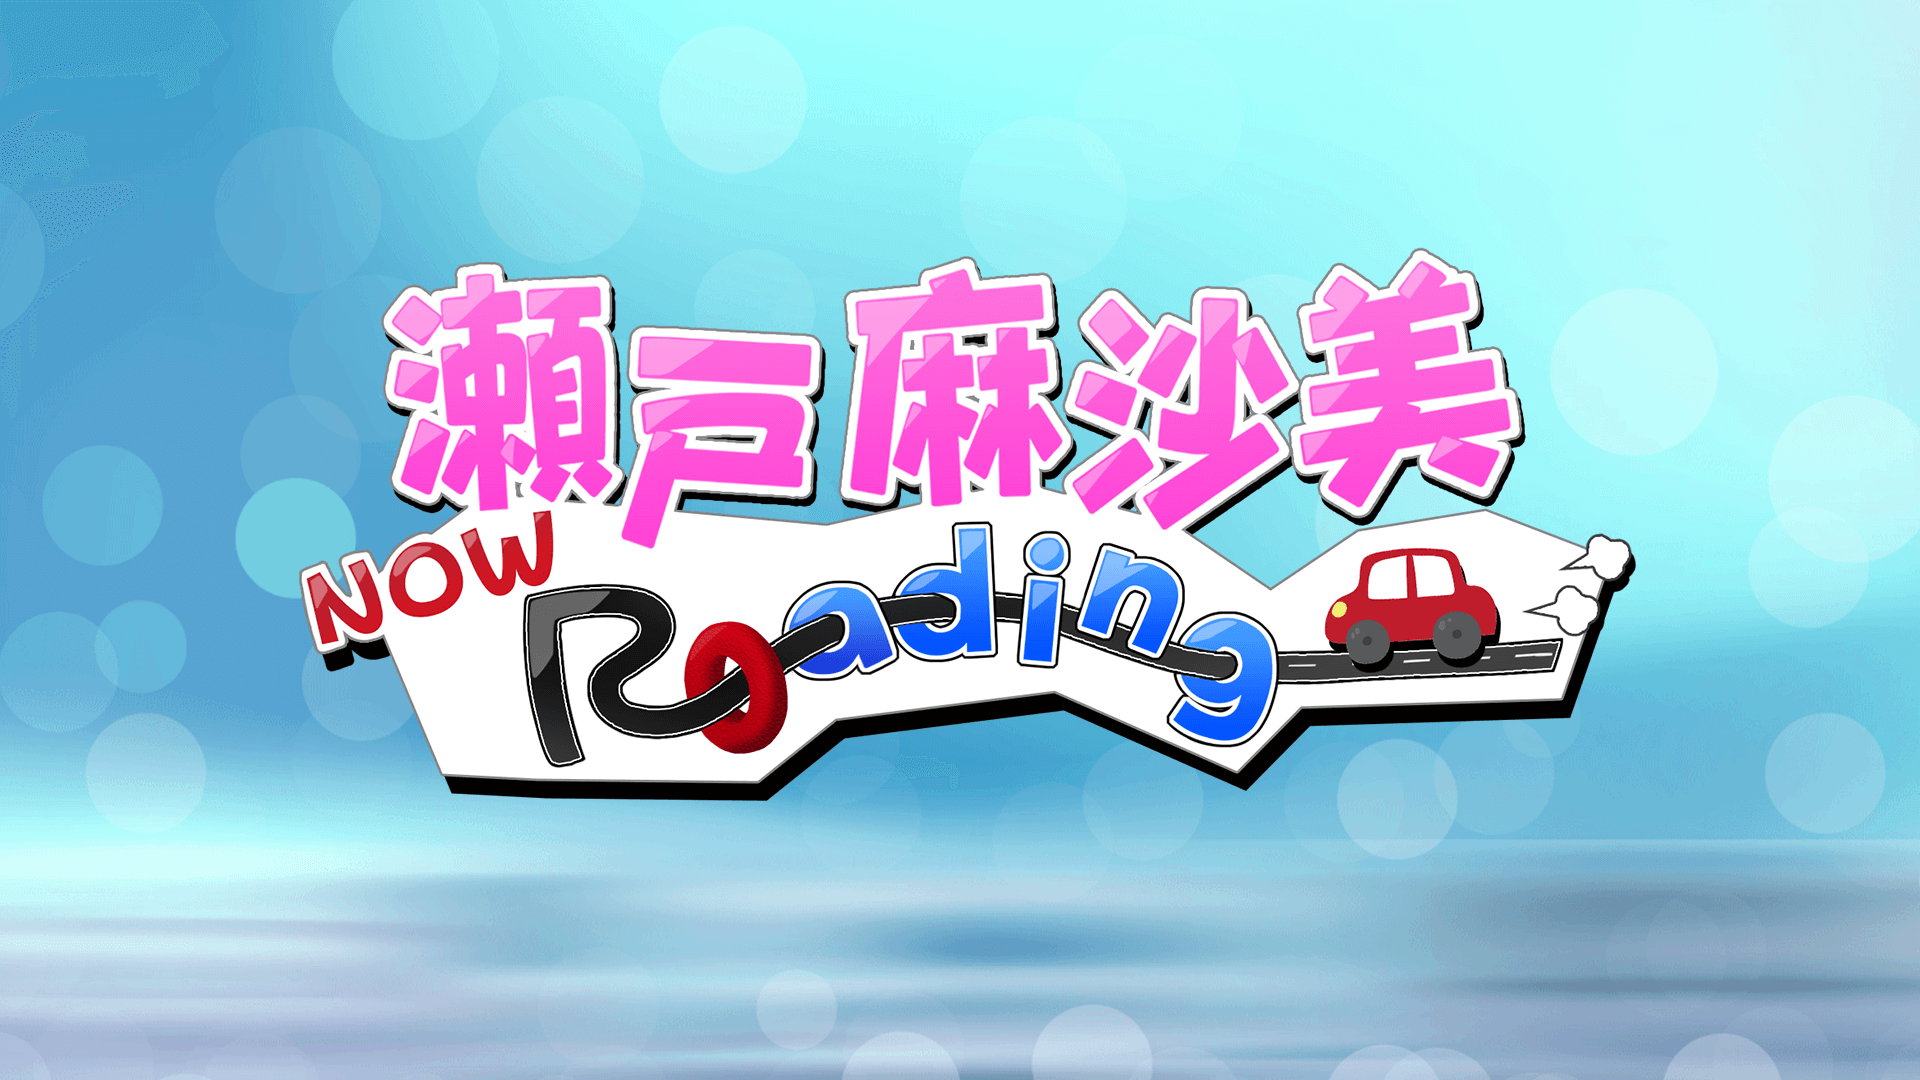 「瀬戸麻沙美 Now Roading」ゲーム実況動画配信開始！！